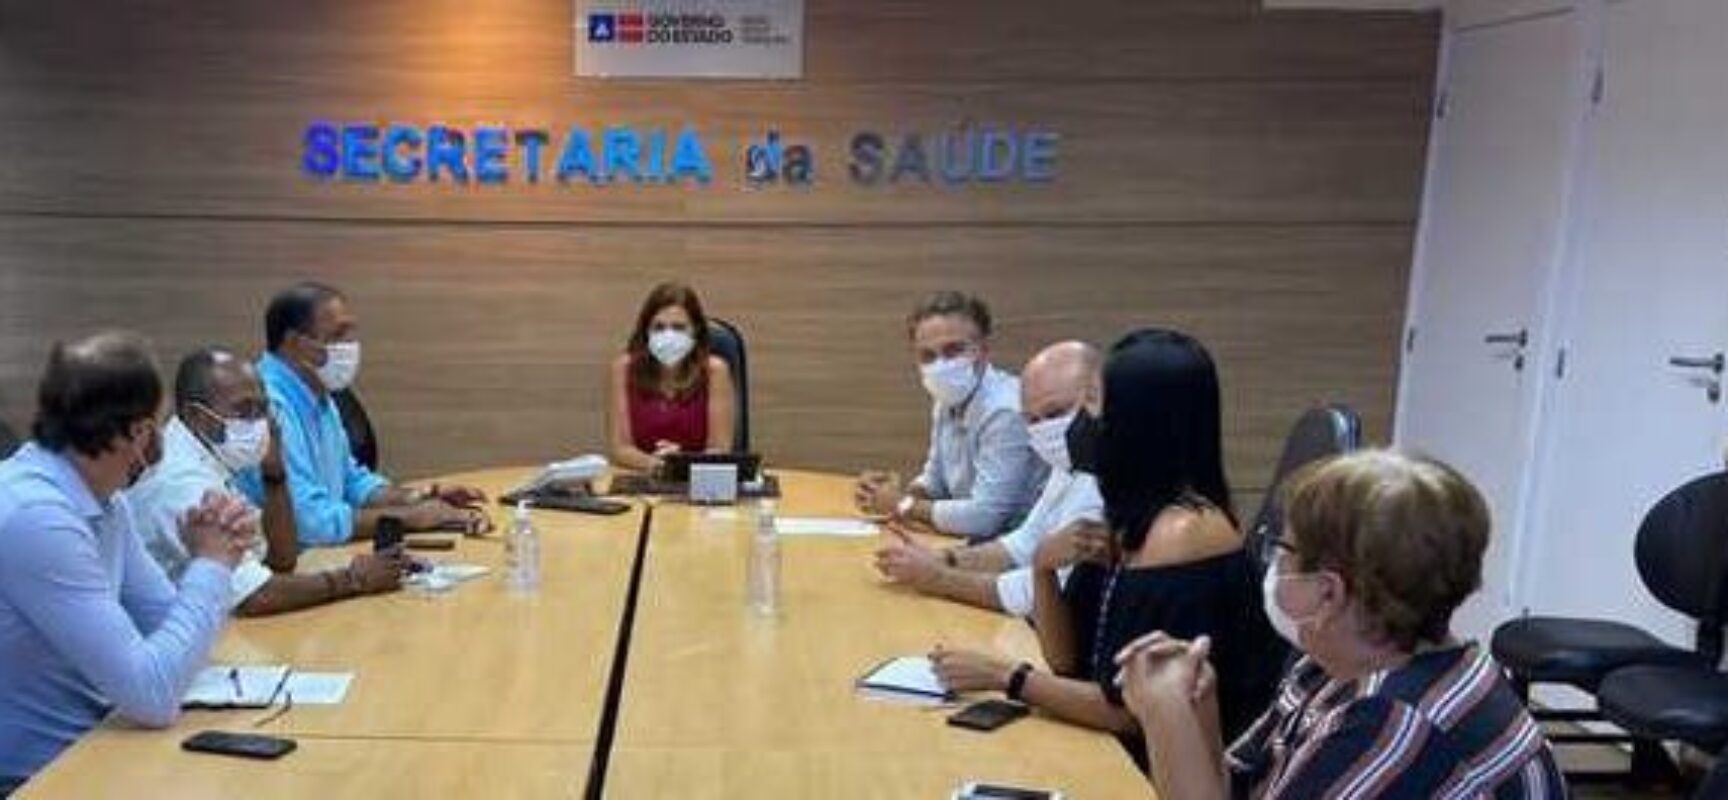 Prefeito e vice-prefeito solicitam ao Estado transferência da pediatria do SUS em Ilhéus